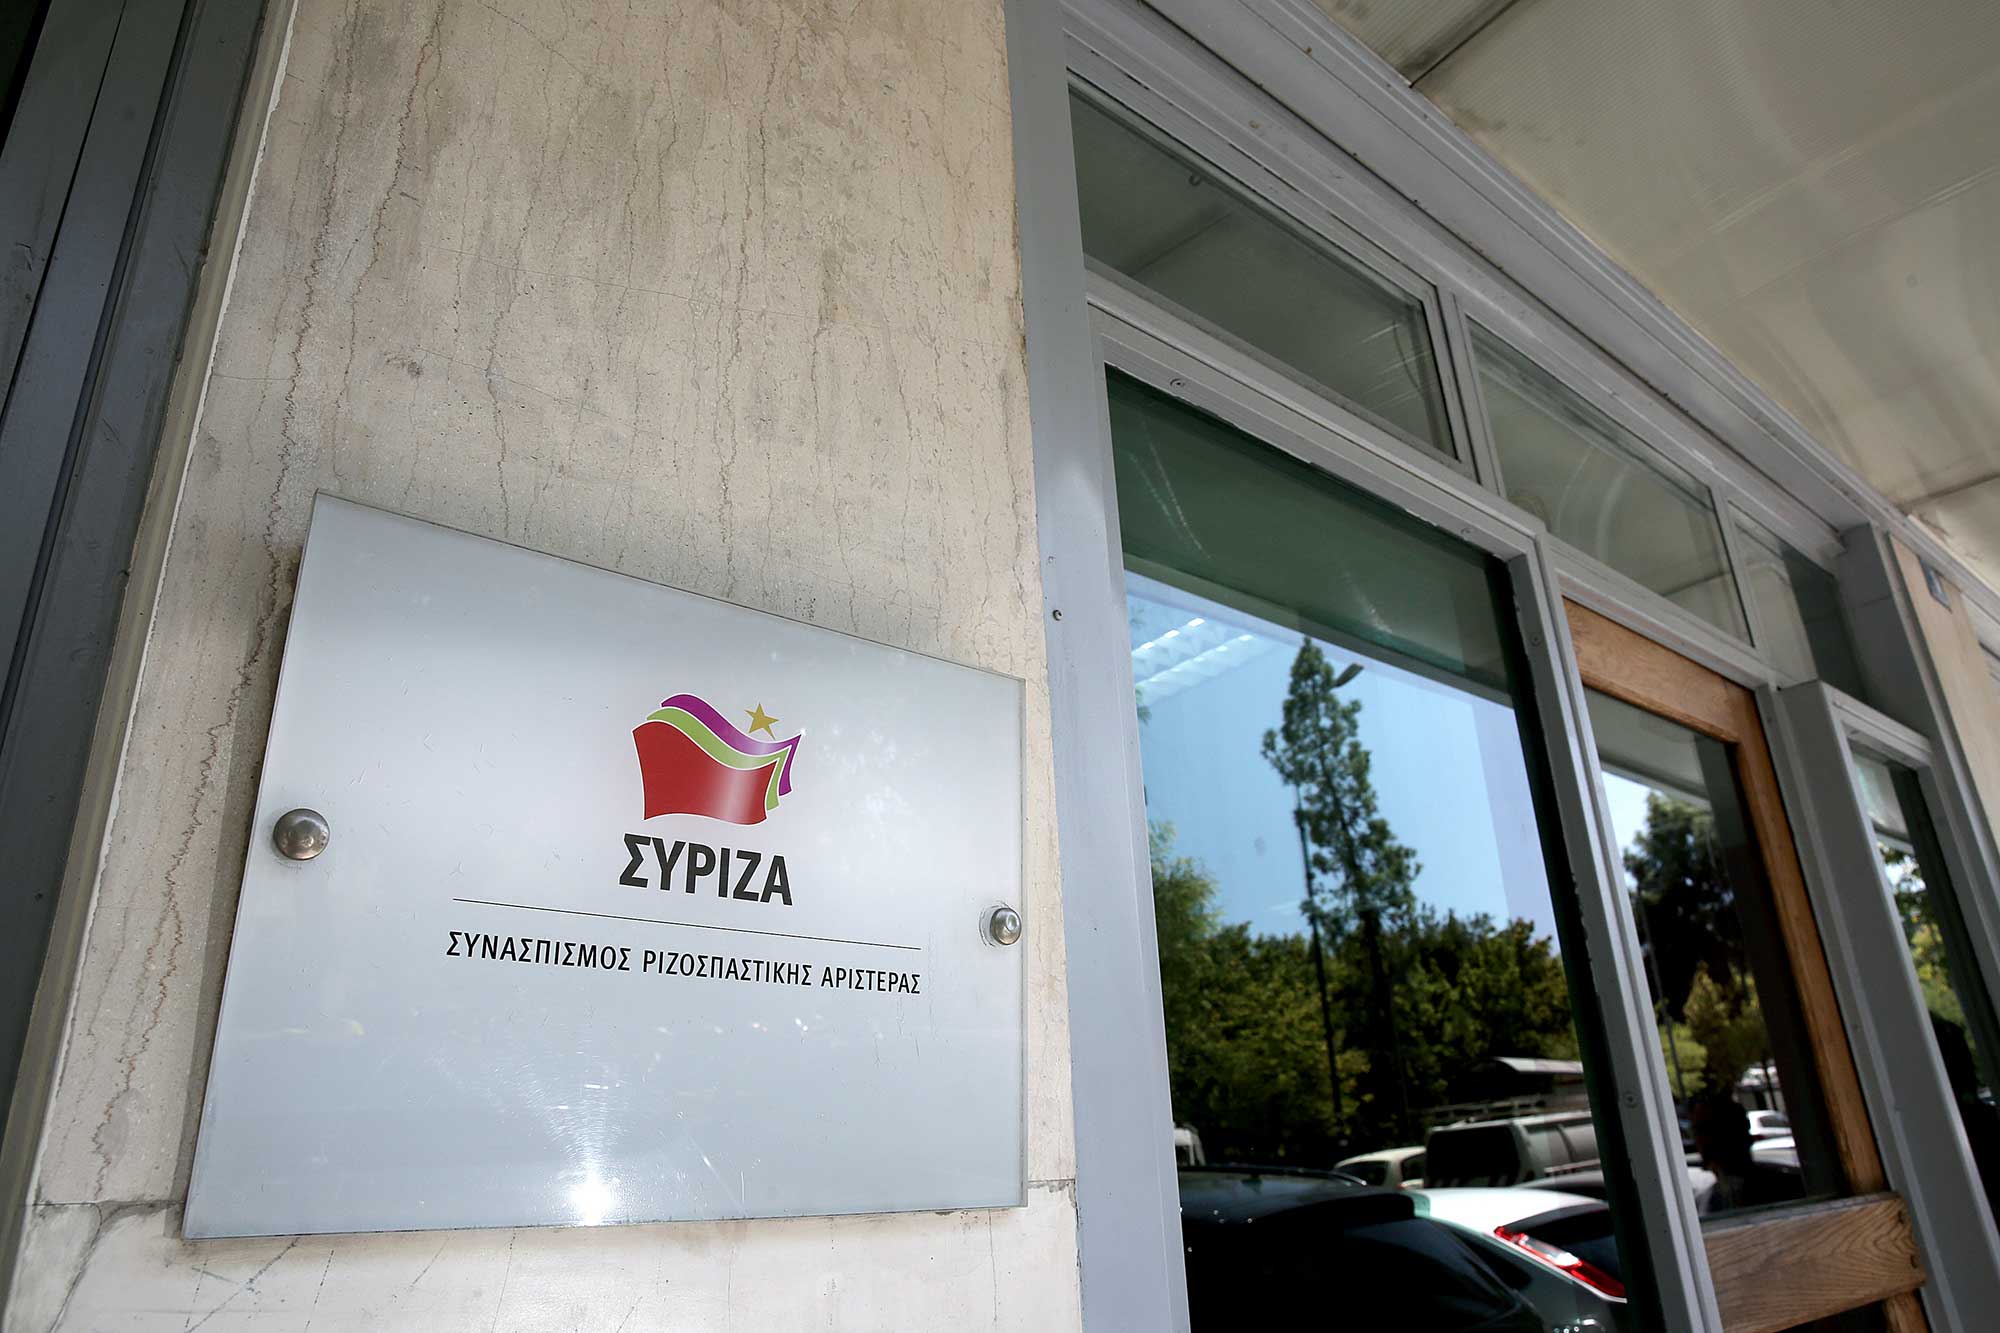 ΣΥΡΙΖΑ: Το ξαναζεσταμένο φαγητό των δήθεν παρακολουθήσεων επί ΣΥΡΙΖΑ δεν θα διασώσει ούτε τον Μητσοτάκη ούτε το παρακράτος του